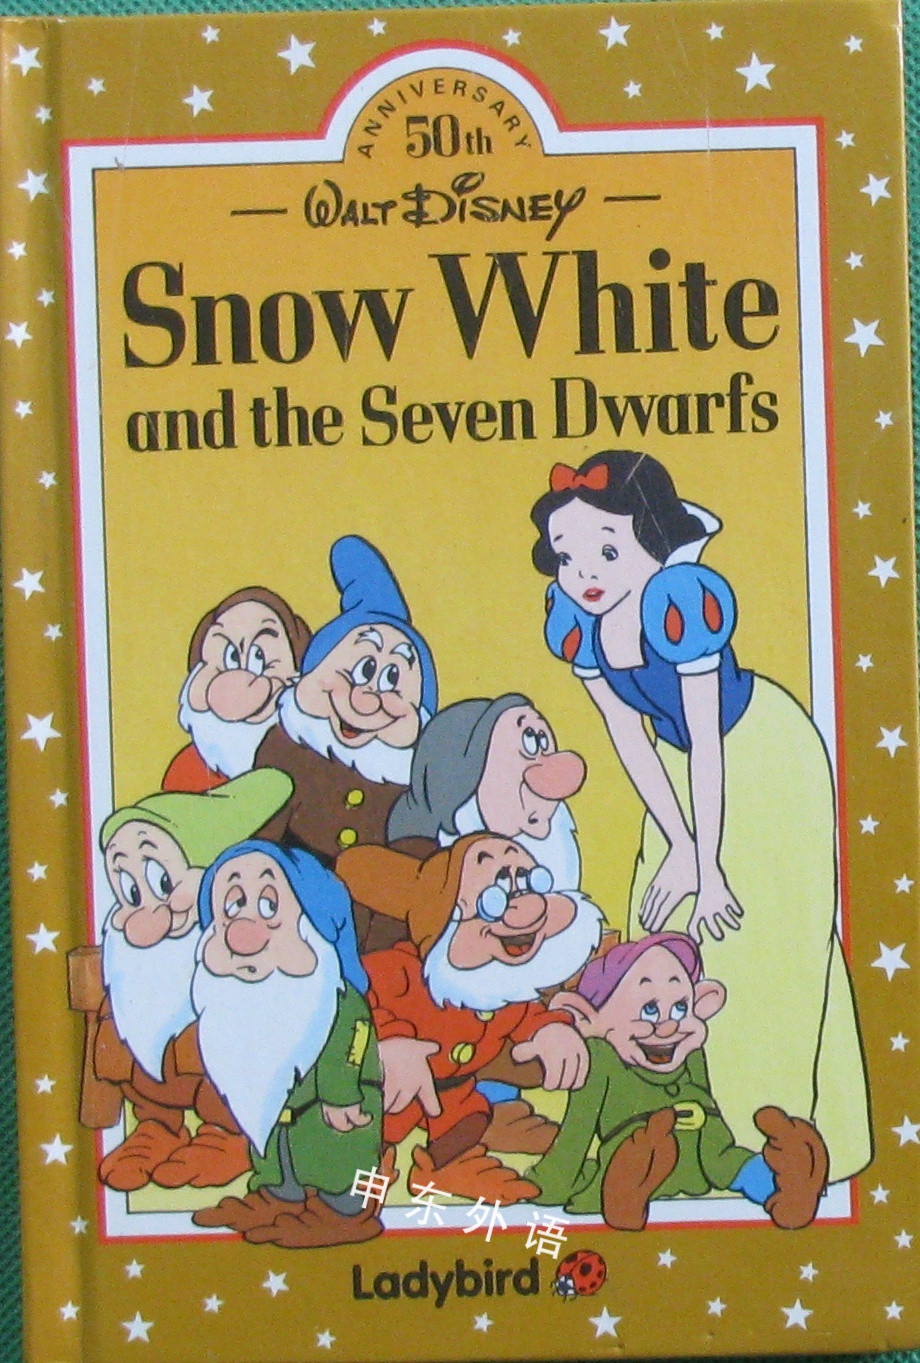 Snow White And The Seven Dwarfs Easy Readers 白雪公主 迪斯尼 热门人物 儿童图书 进口图书 进口书 原版书 绘本书 英文原版图书 儿童纸板书 外语图书 进口儿童书 原版儿童书